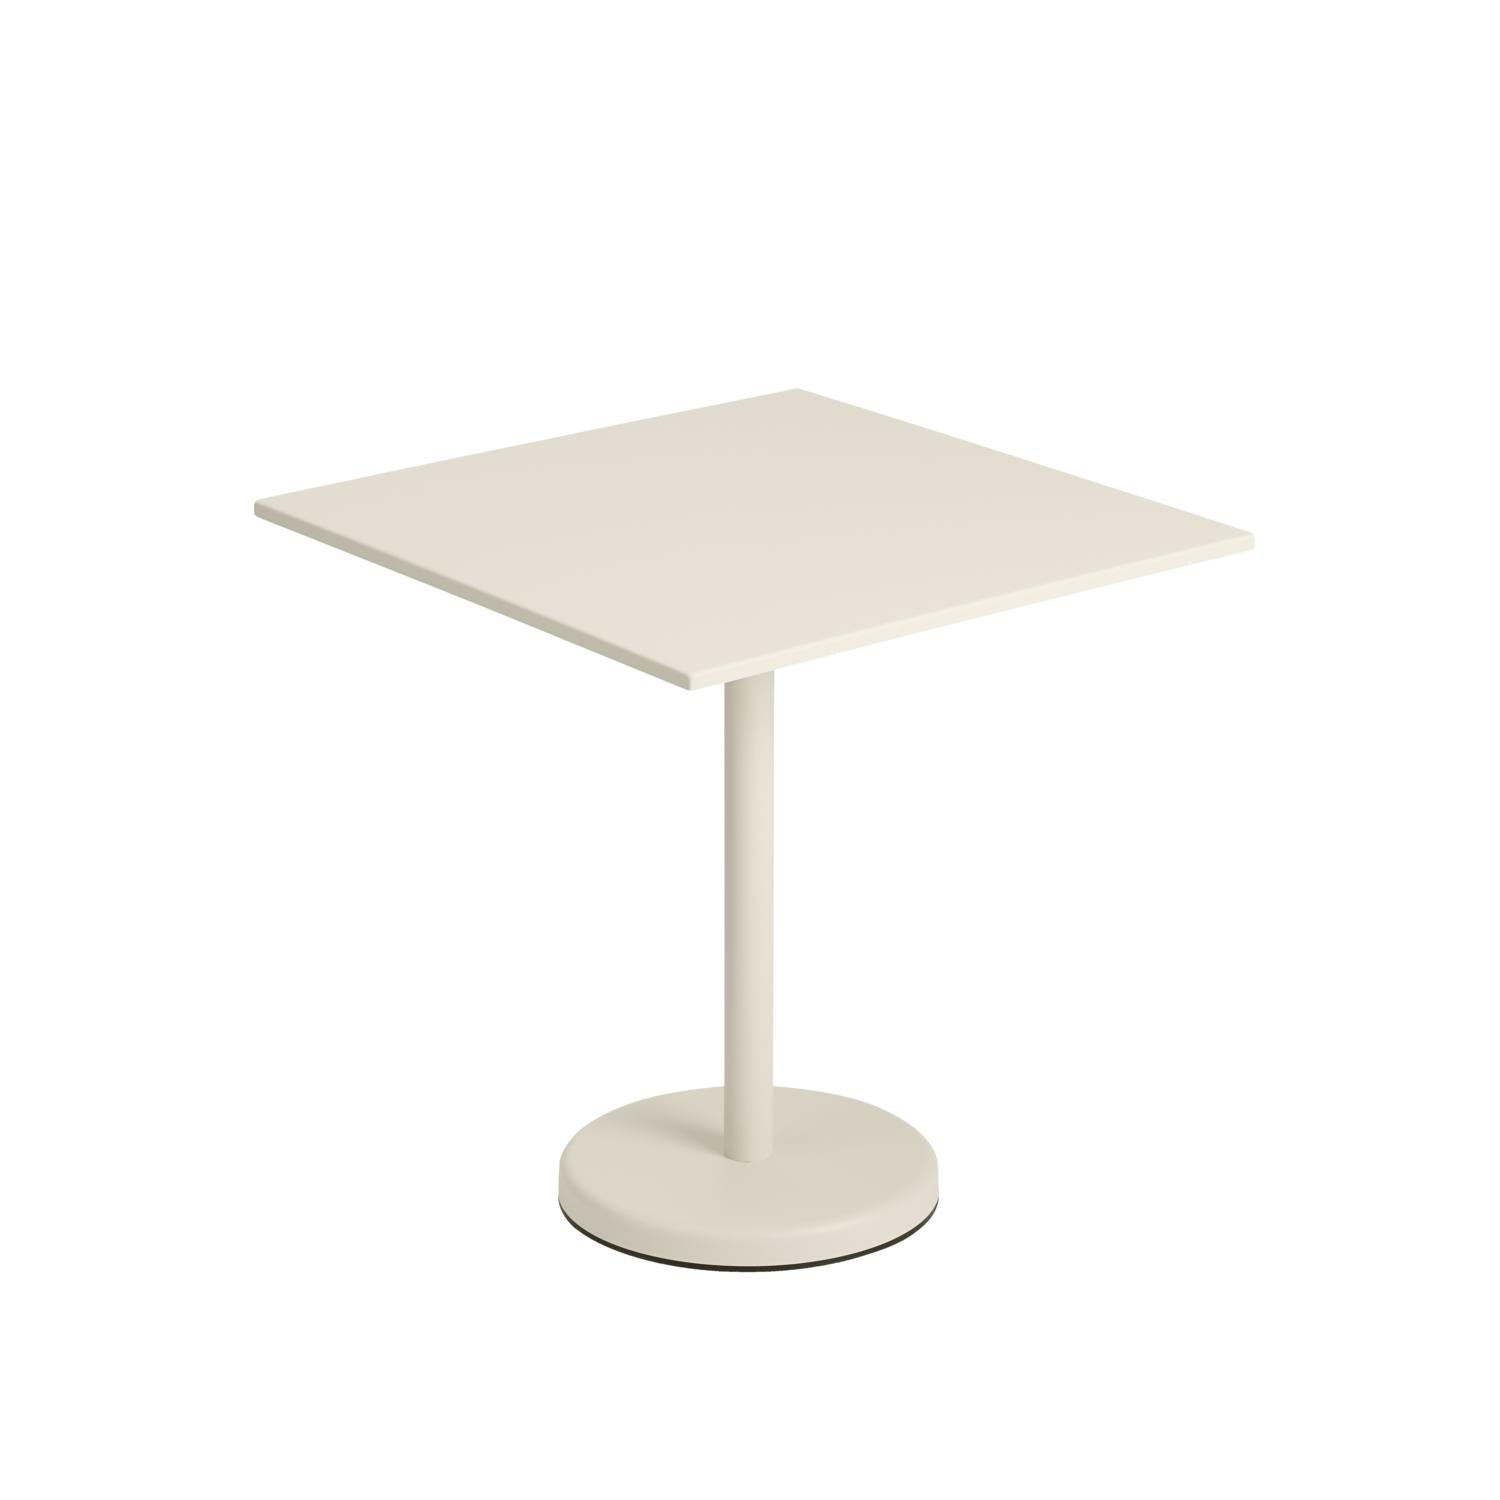 Muuto Linear Steel Café Table 70 x70 cm, fuera de blanco